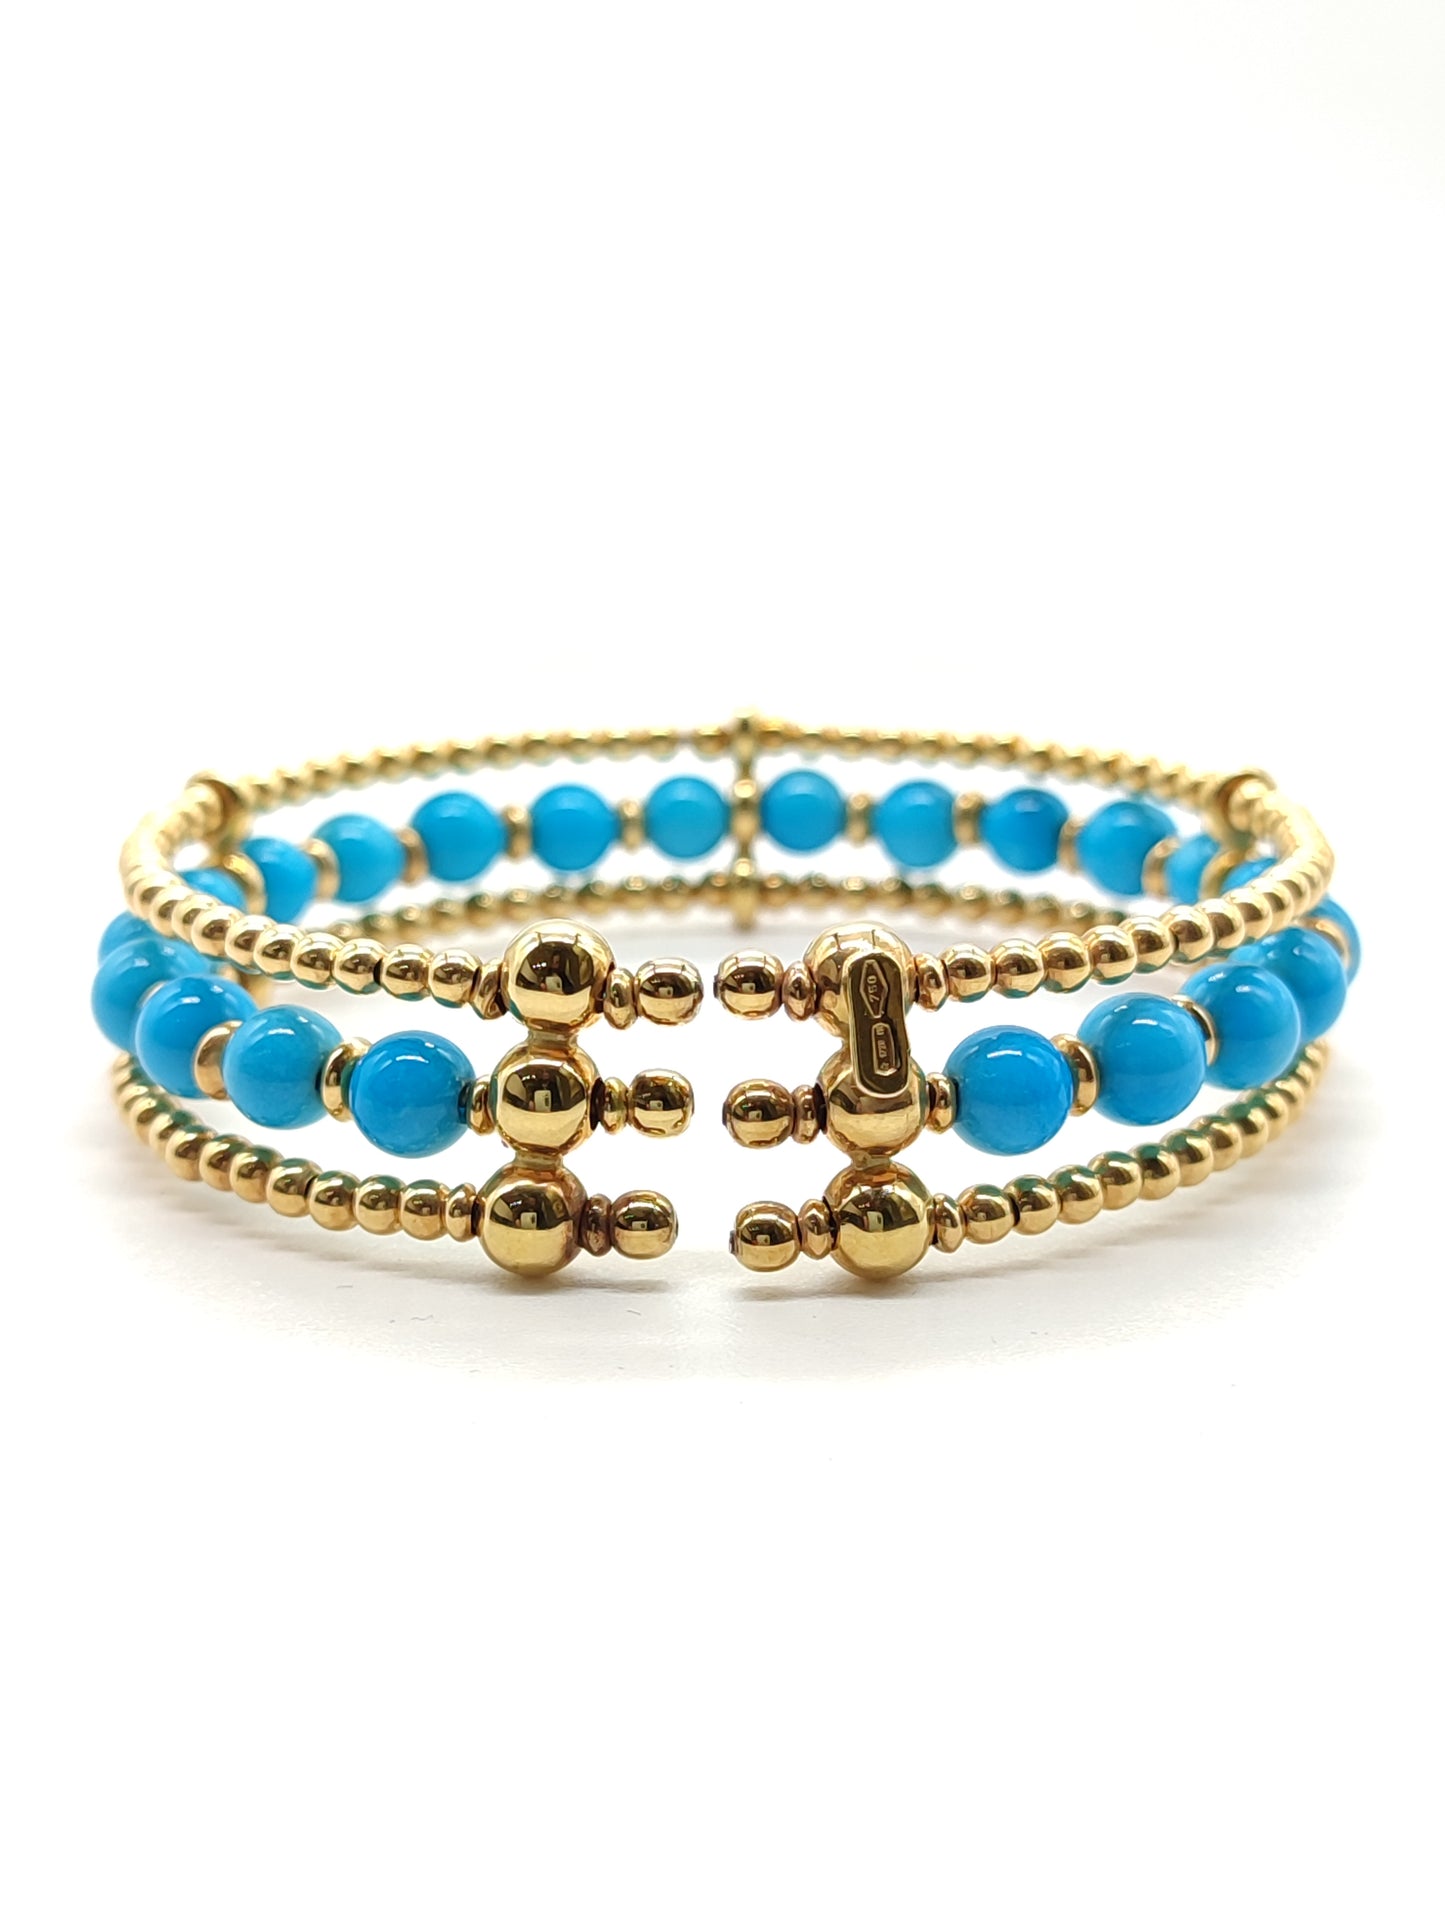 Gold bangle bracelet with turquoises